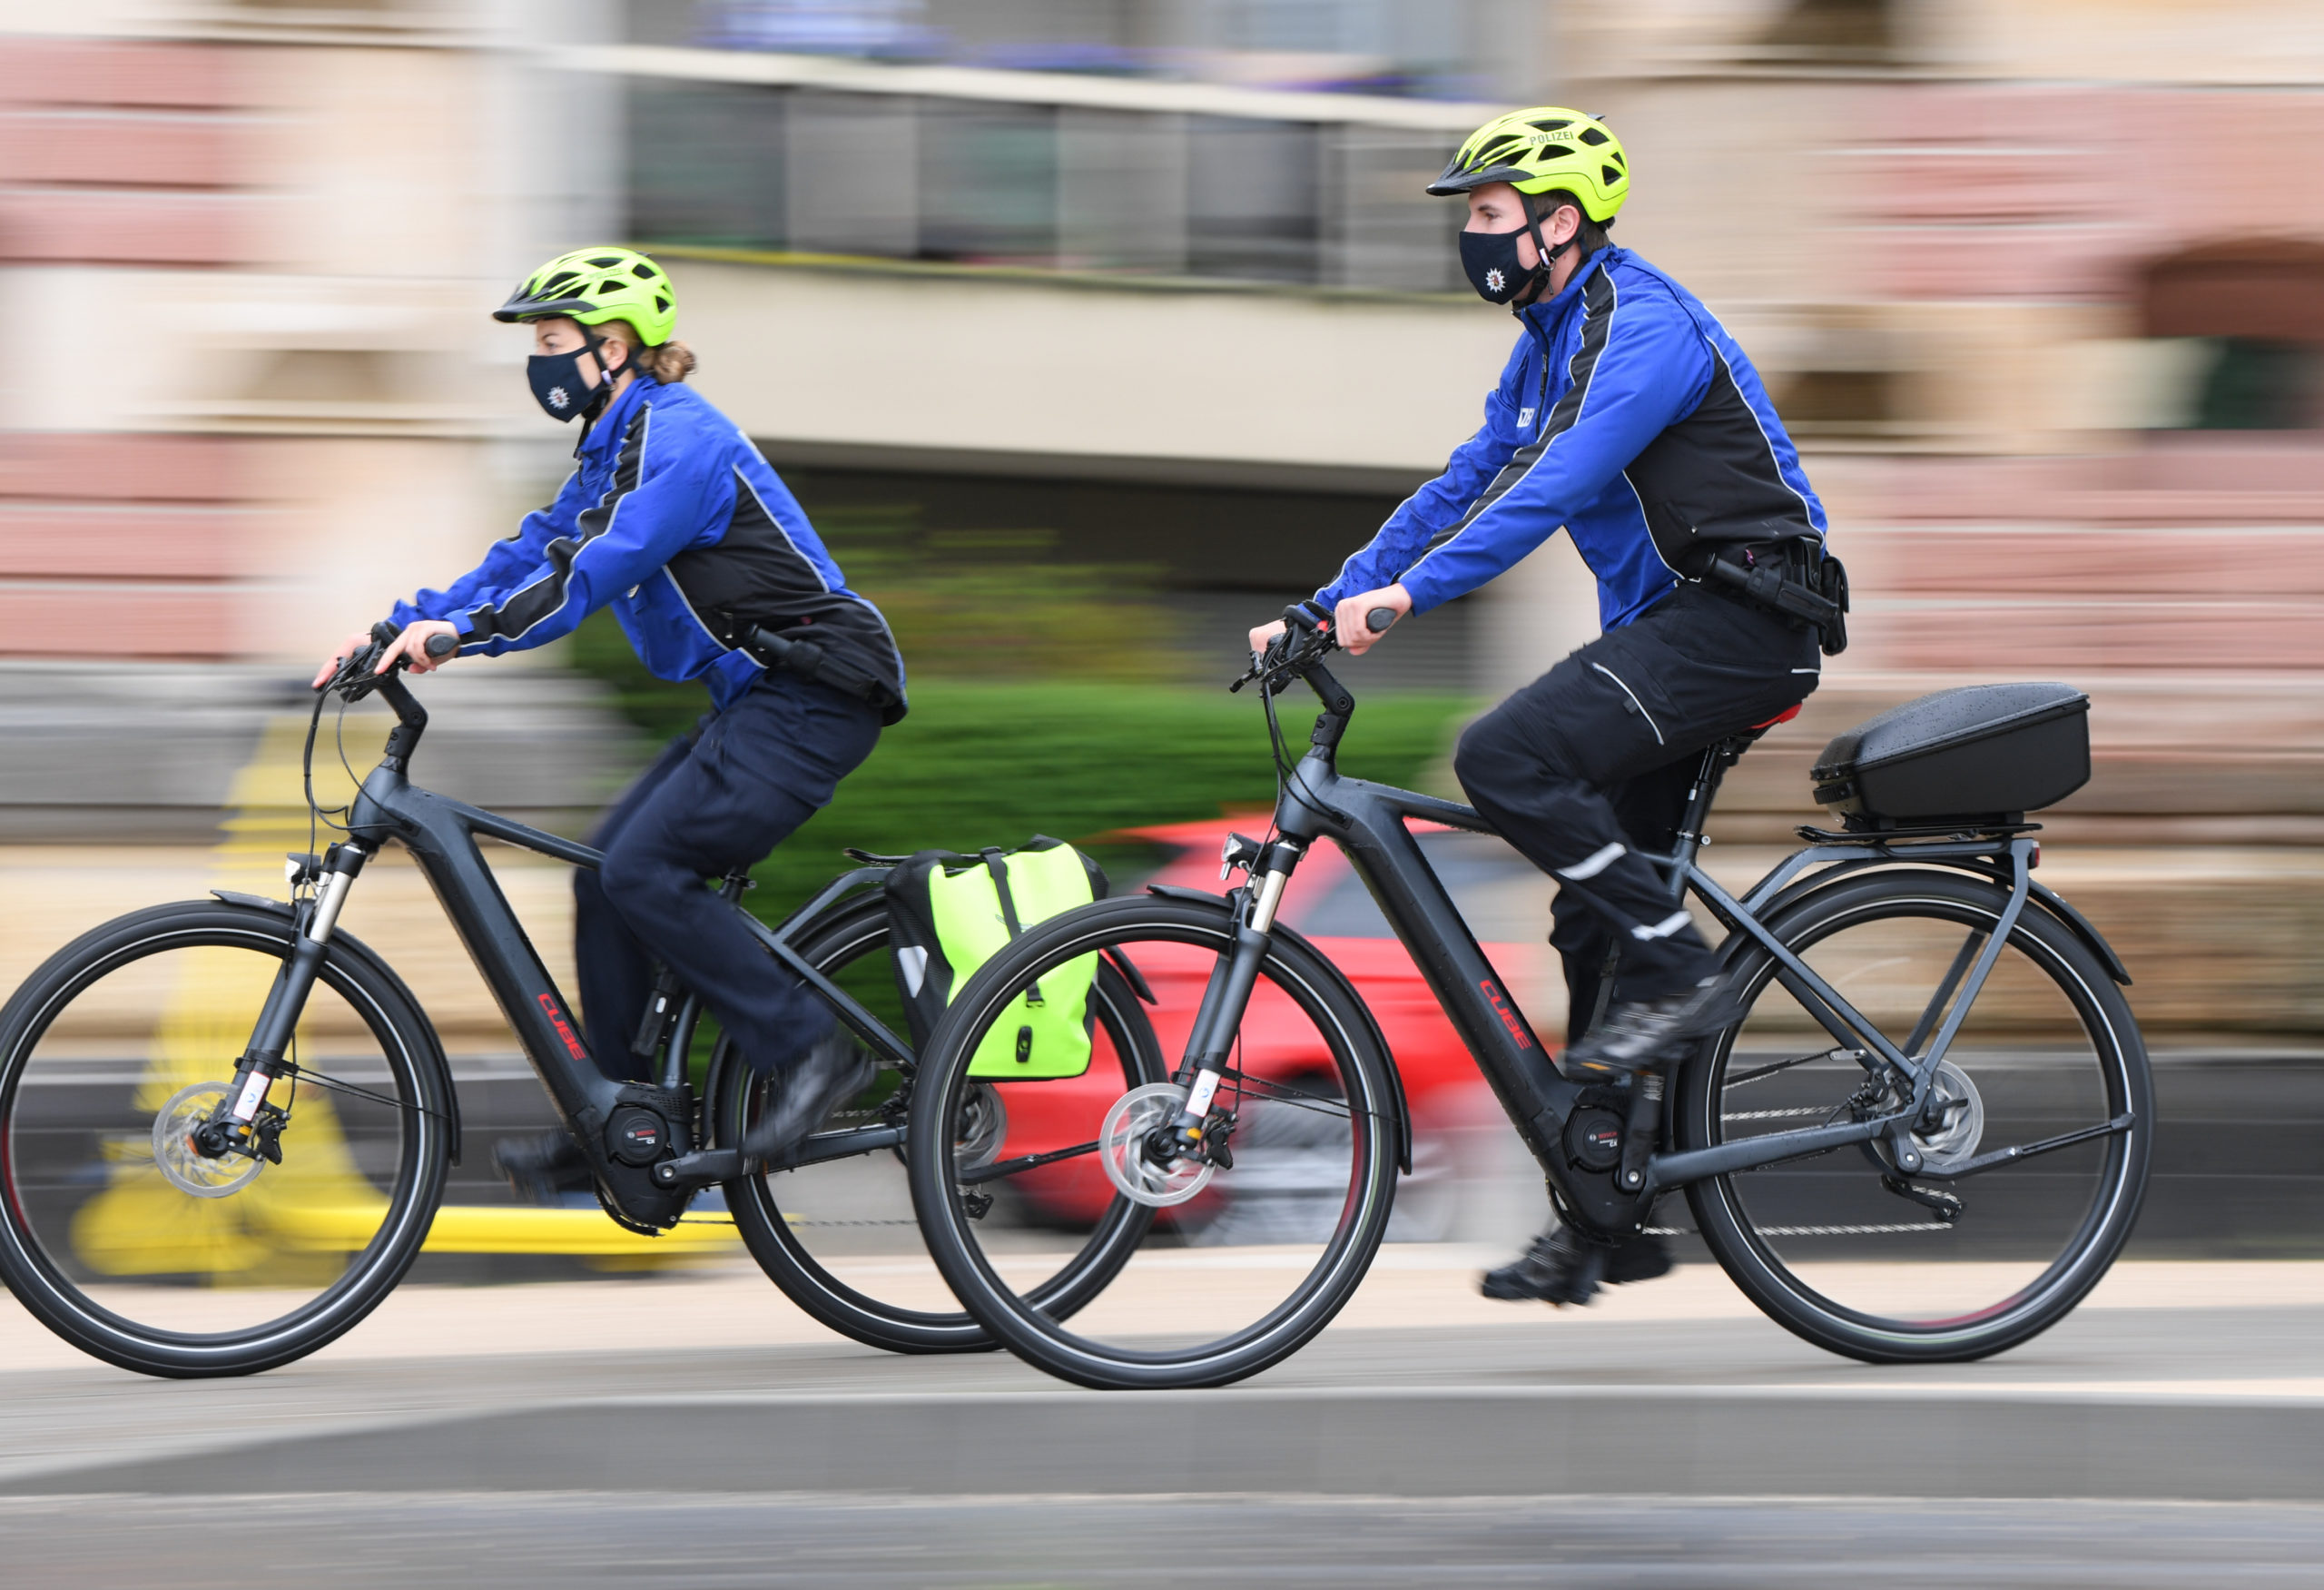 Vias : "Le nombre d'utilisateurs de vélos électriques a doublé en cinq ans".